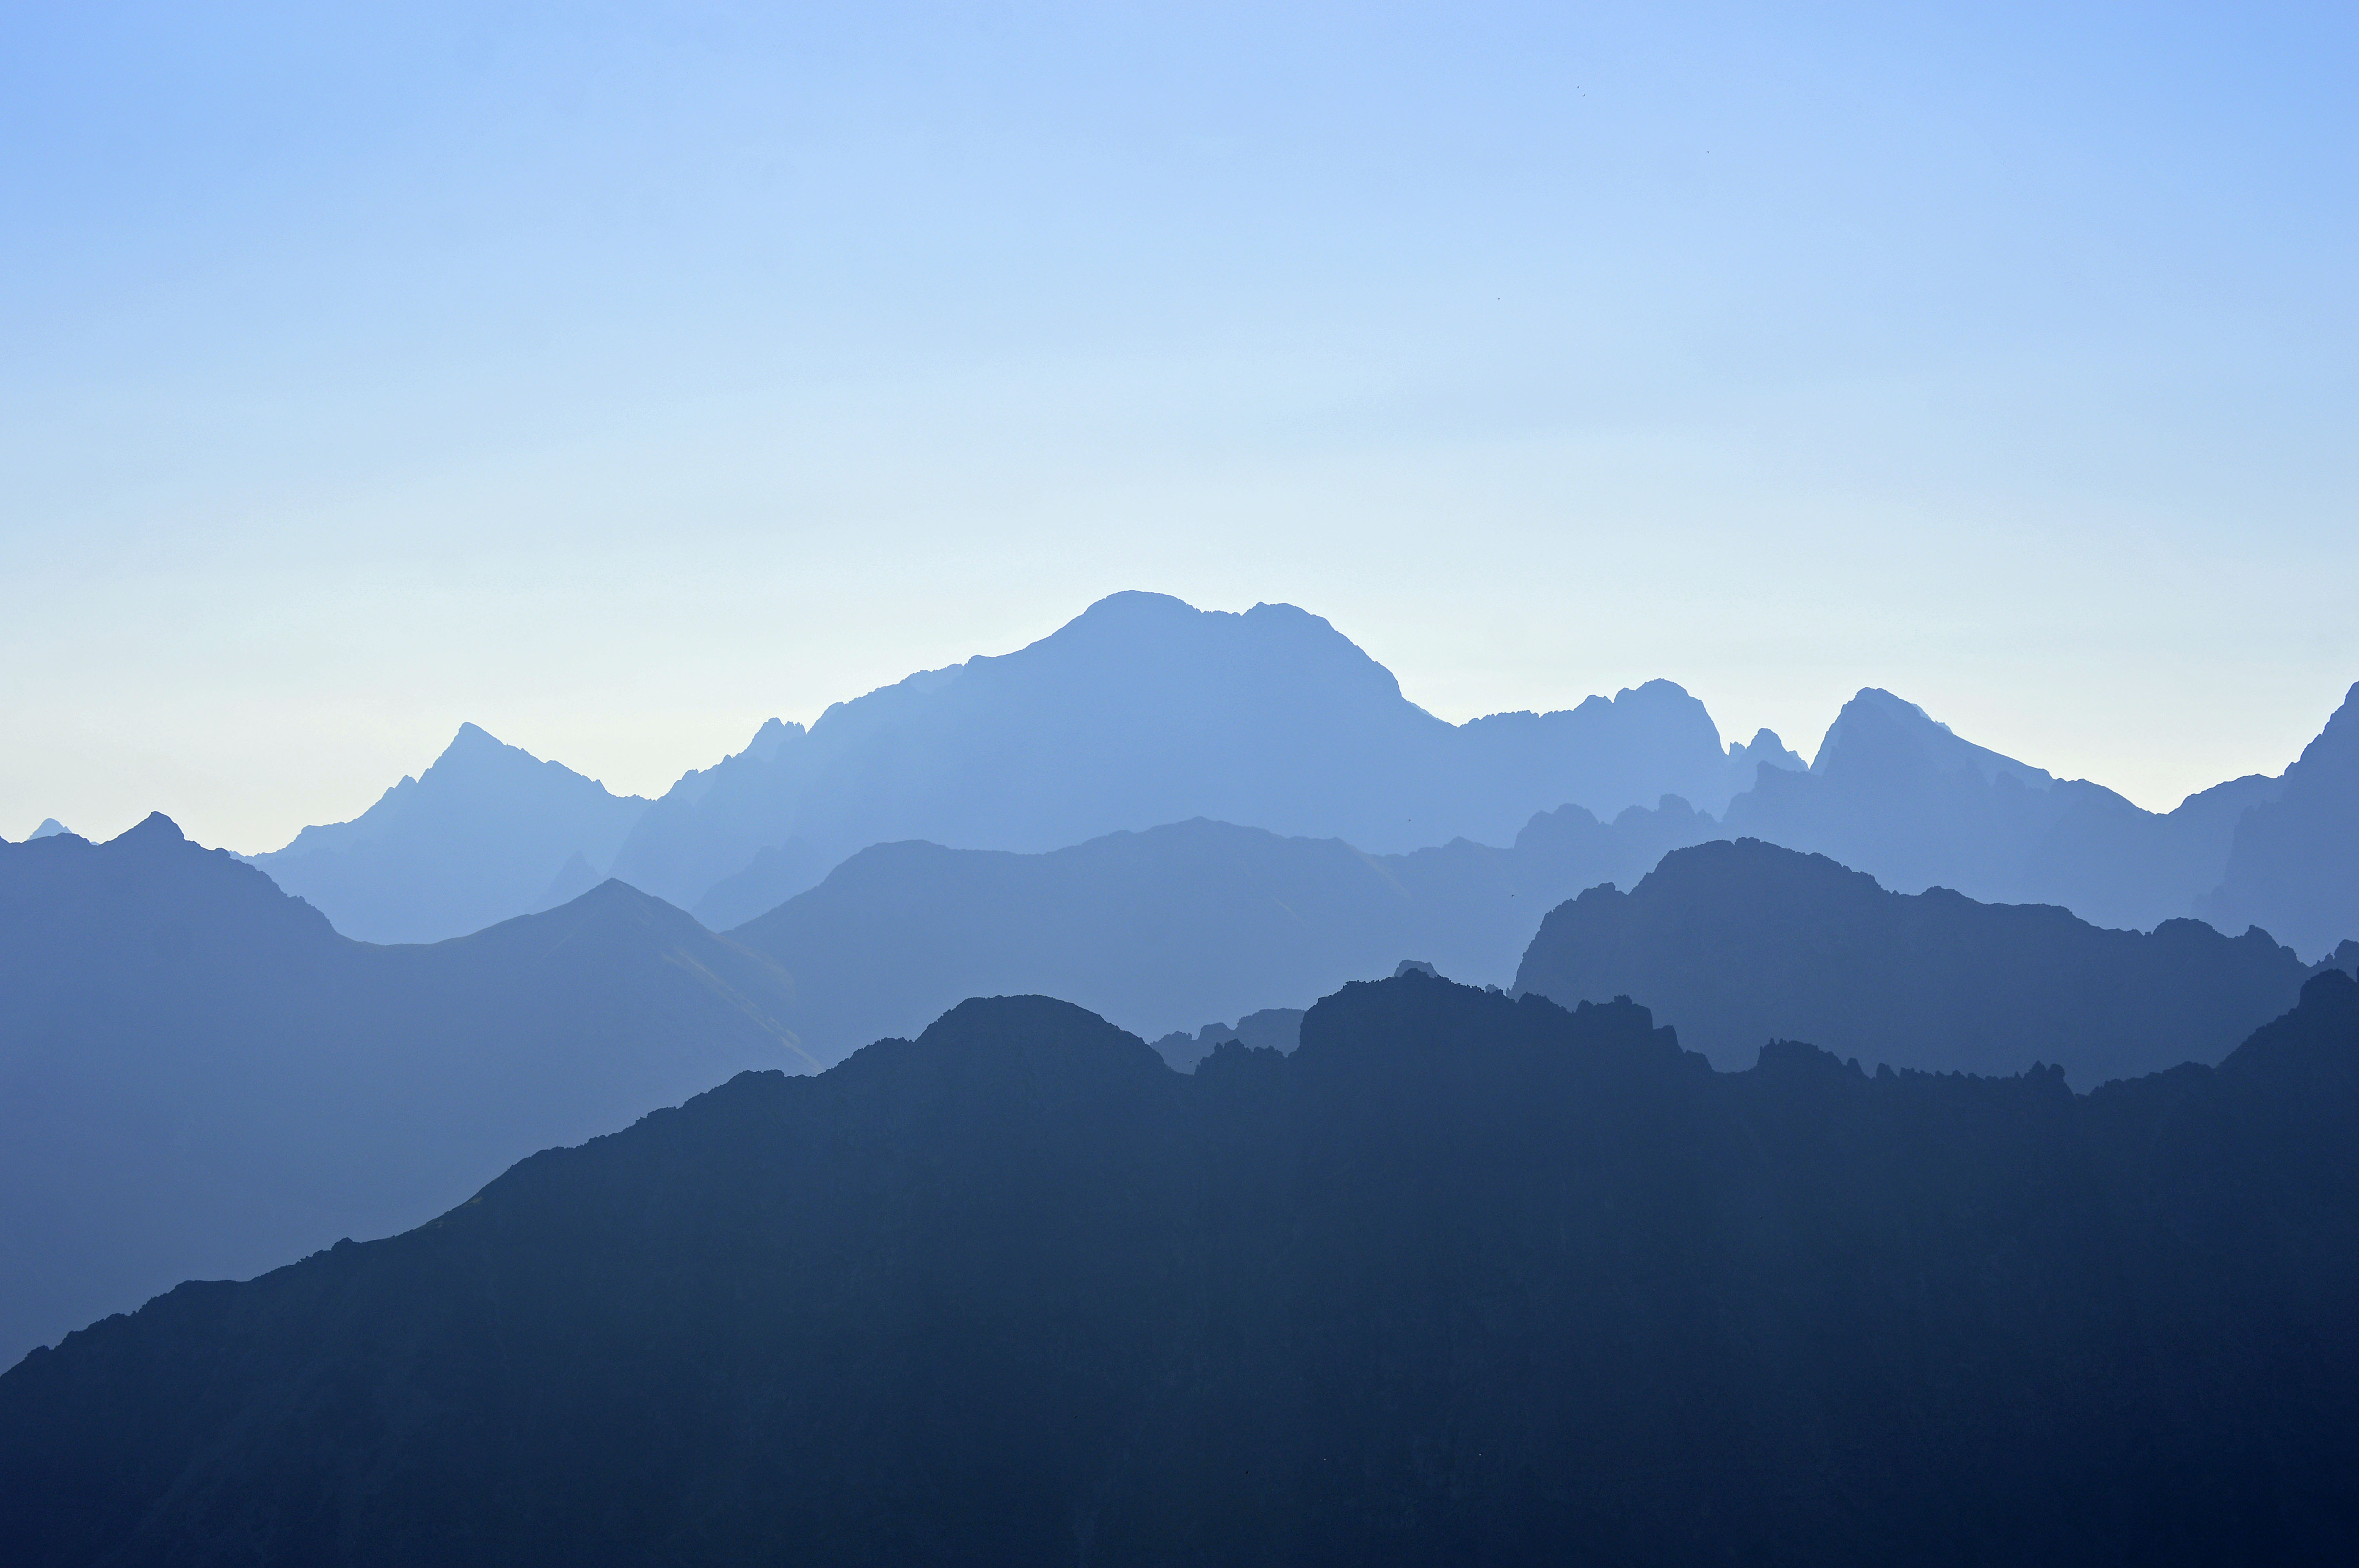 tatry wallpaper,mountainous landforms,mountain,sky,mountain range,blue